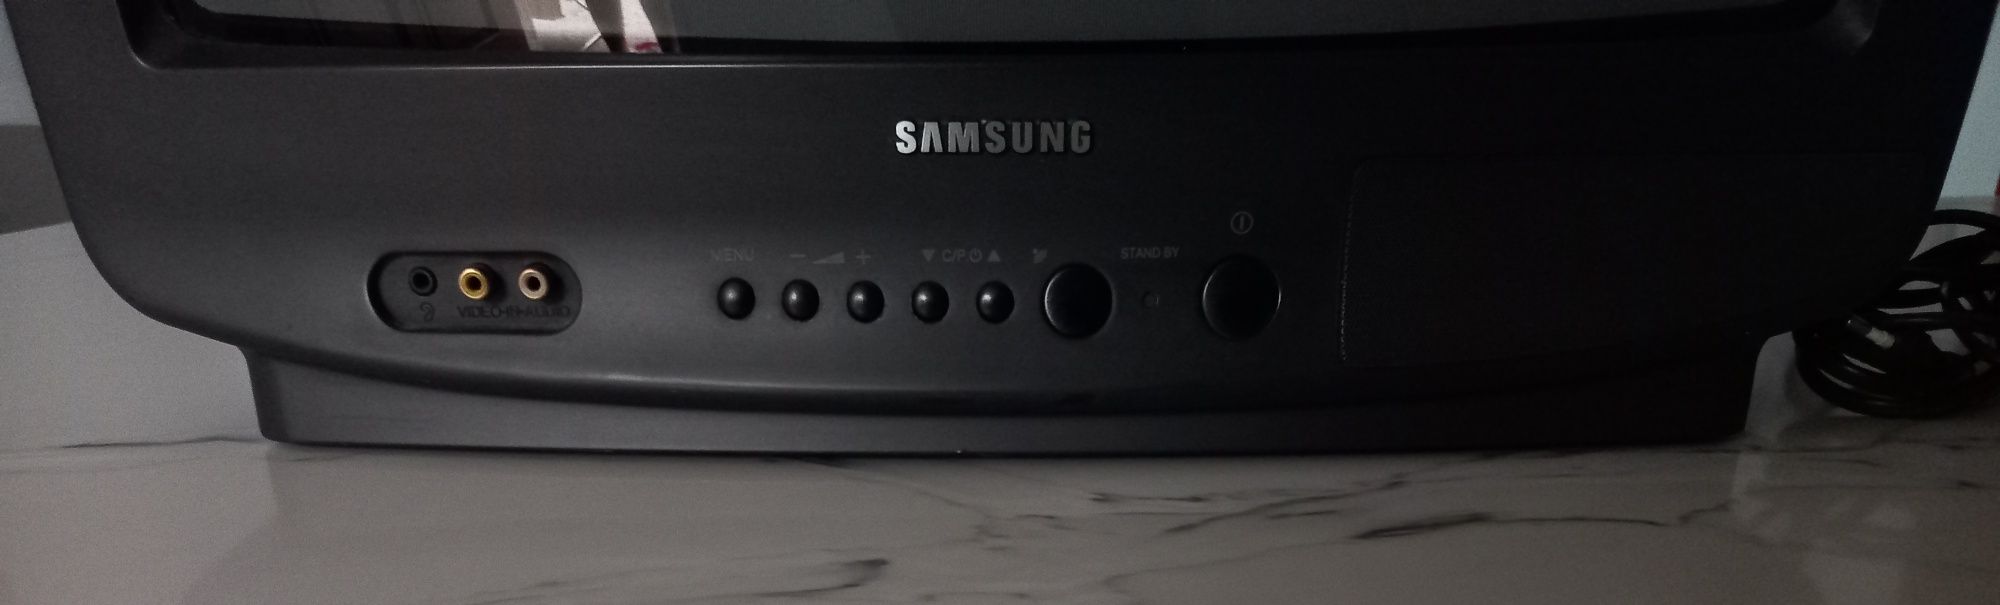 Televisão Samsung avariada para peças